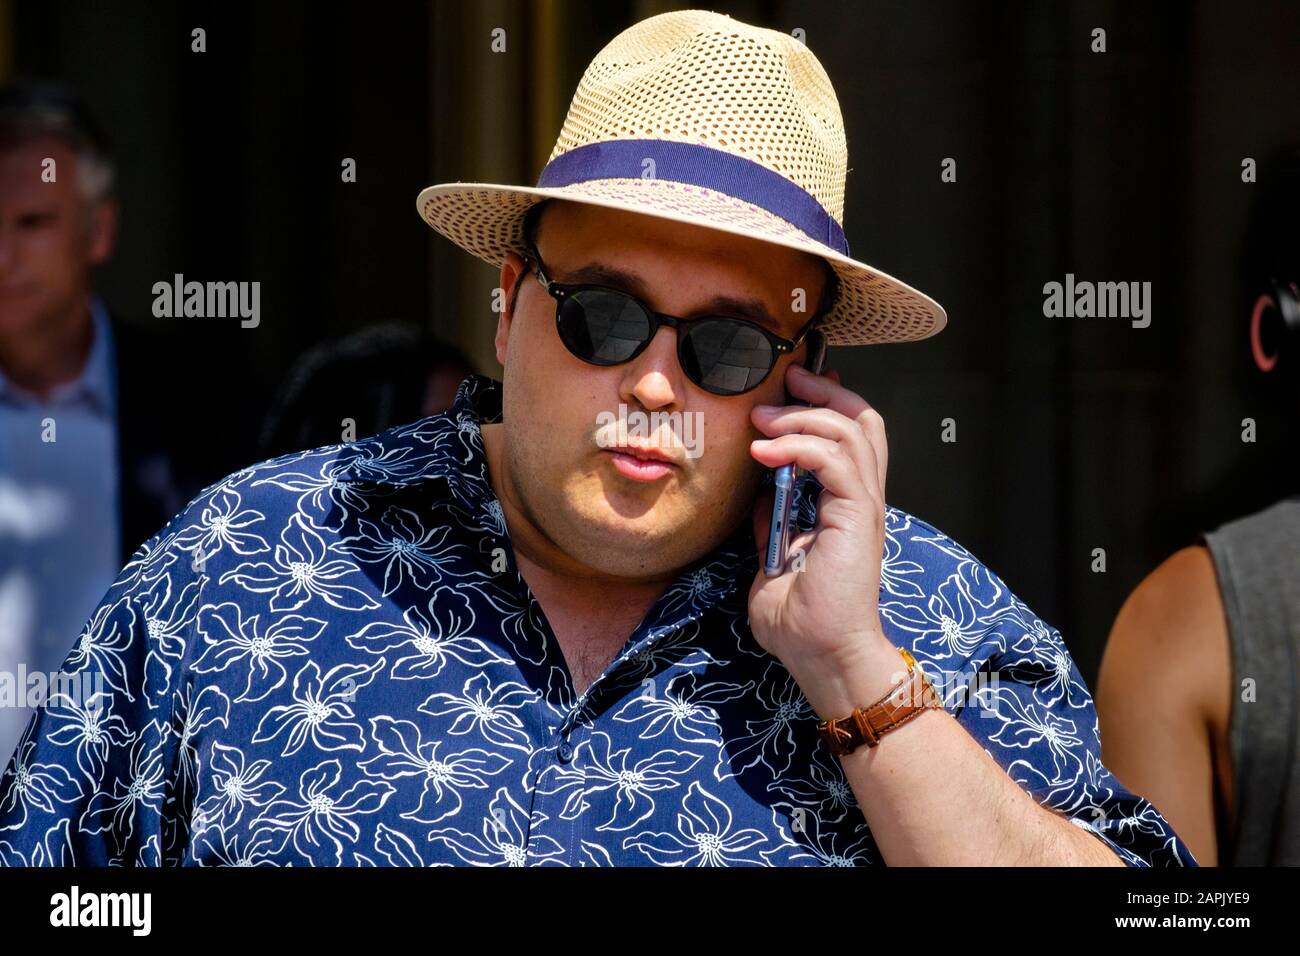 Via Londra: Maschio bianco, telefono cellulare, cappello, occhiali da sole. Foto Stock